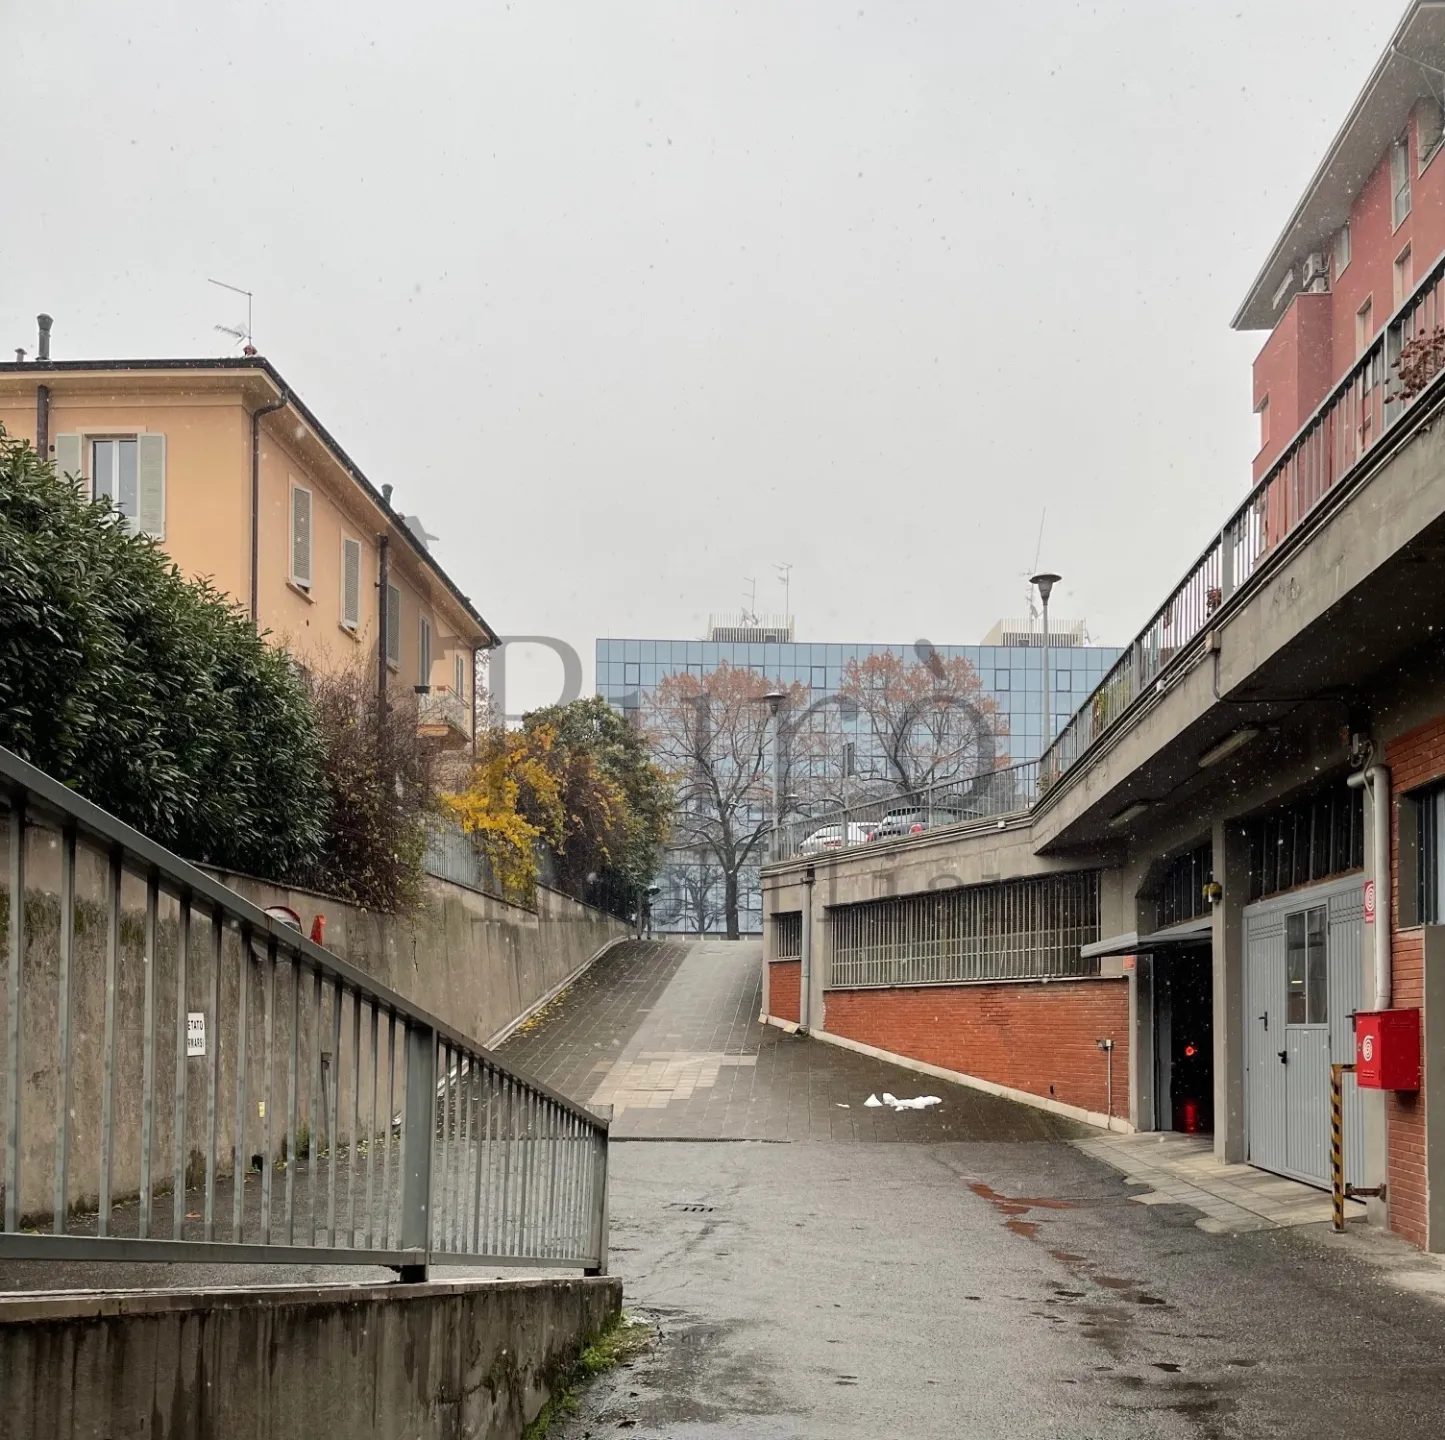 Immagine per Garage - Posto Auto in affitto a Parma viale Mentana 92